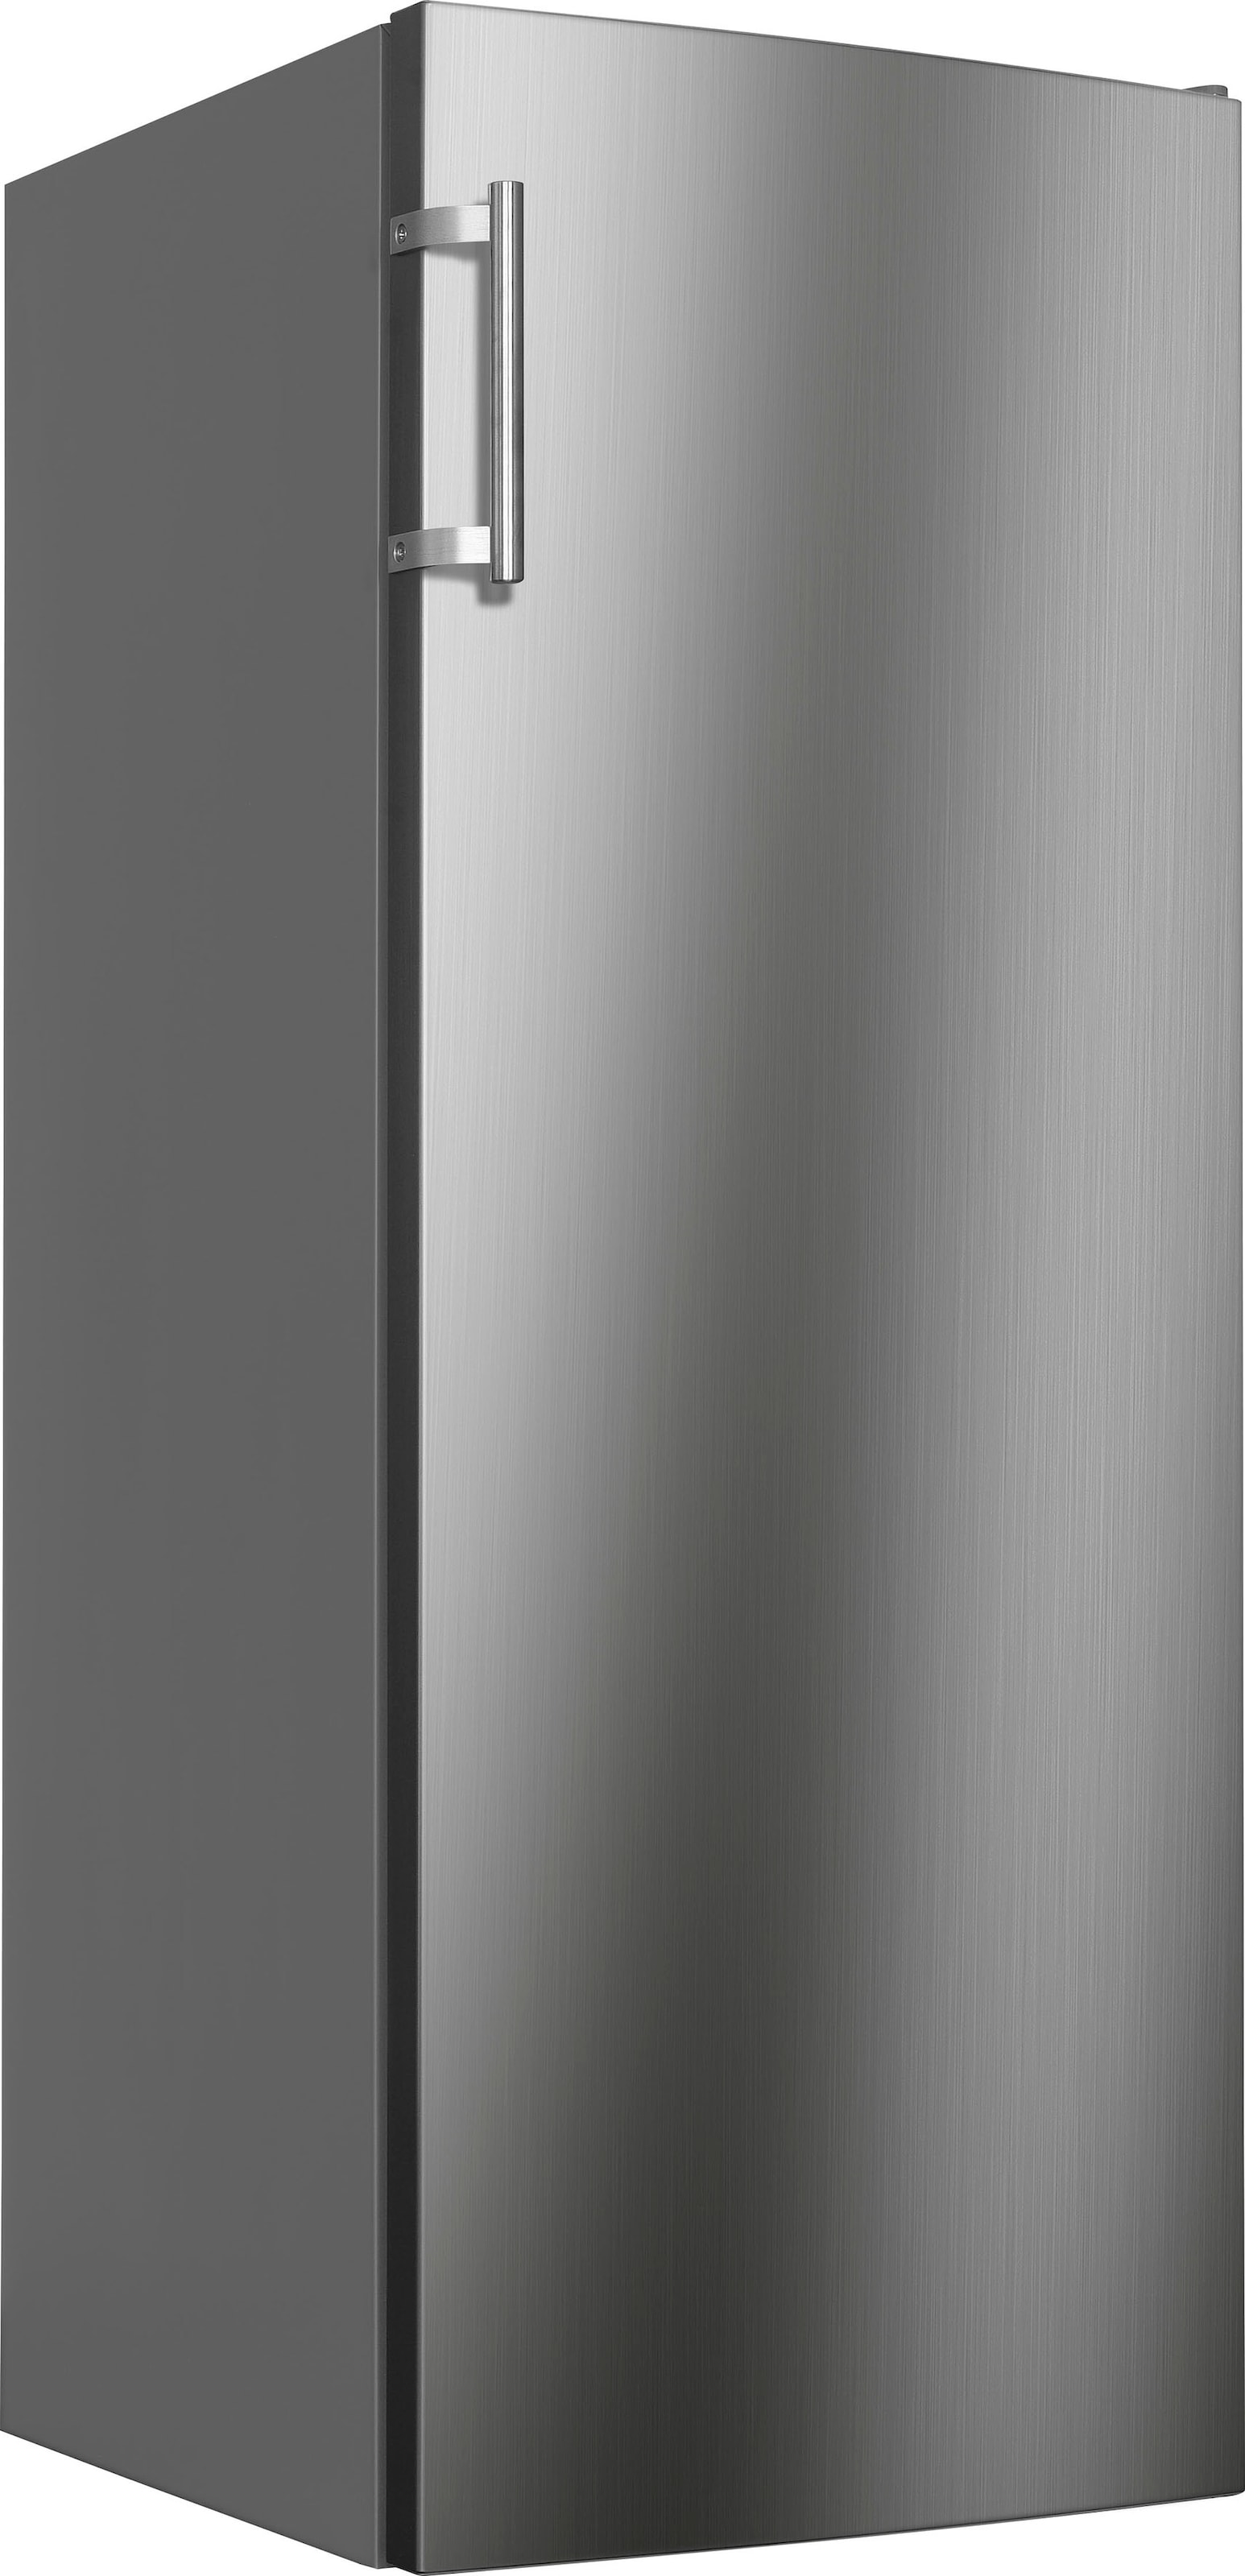 Hanseatic Gefrierschrank, 142,6 cm hoch, 54,4 cm breit, QuickFreeze